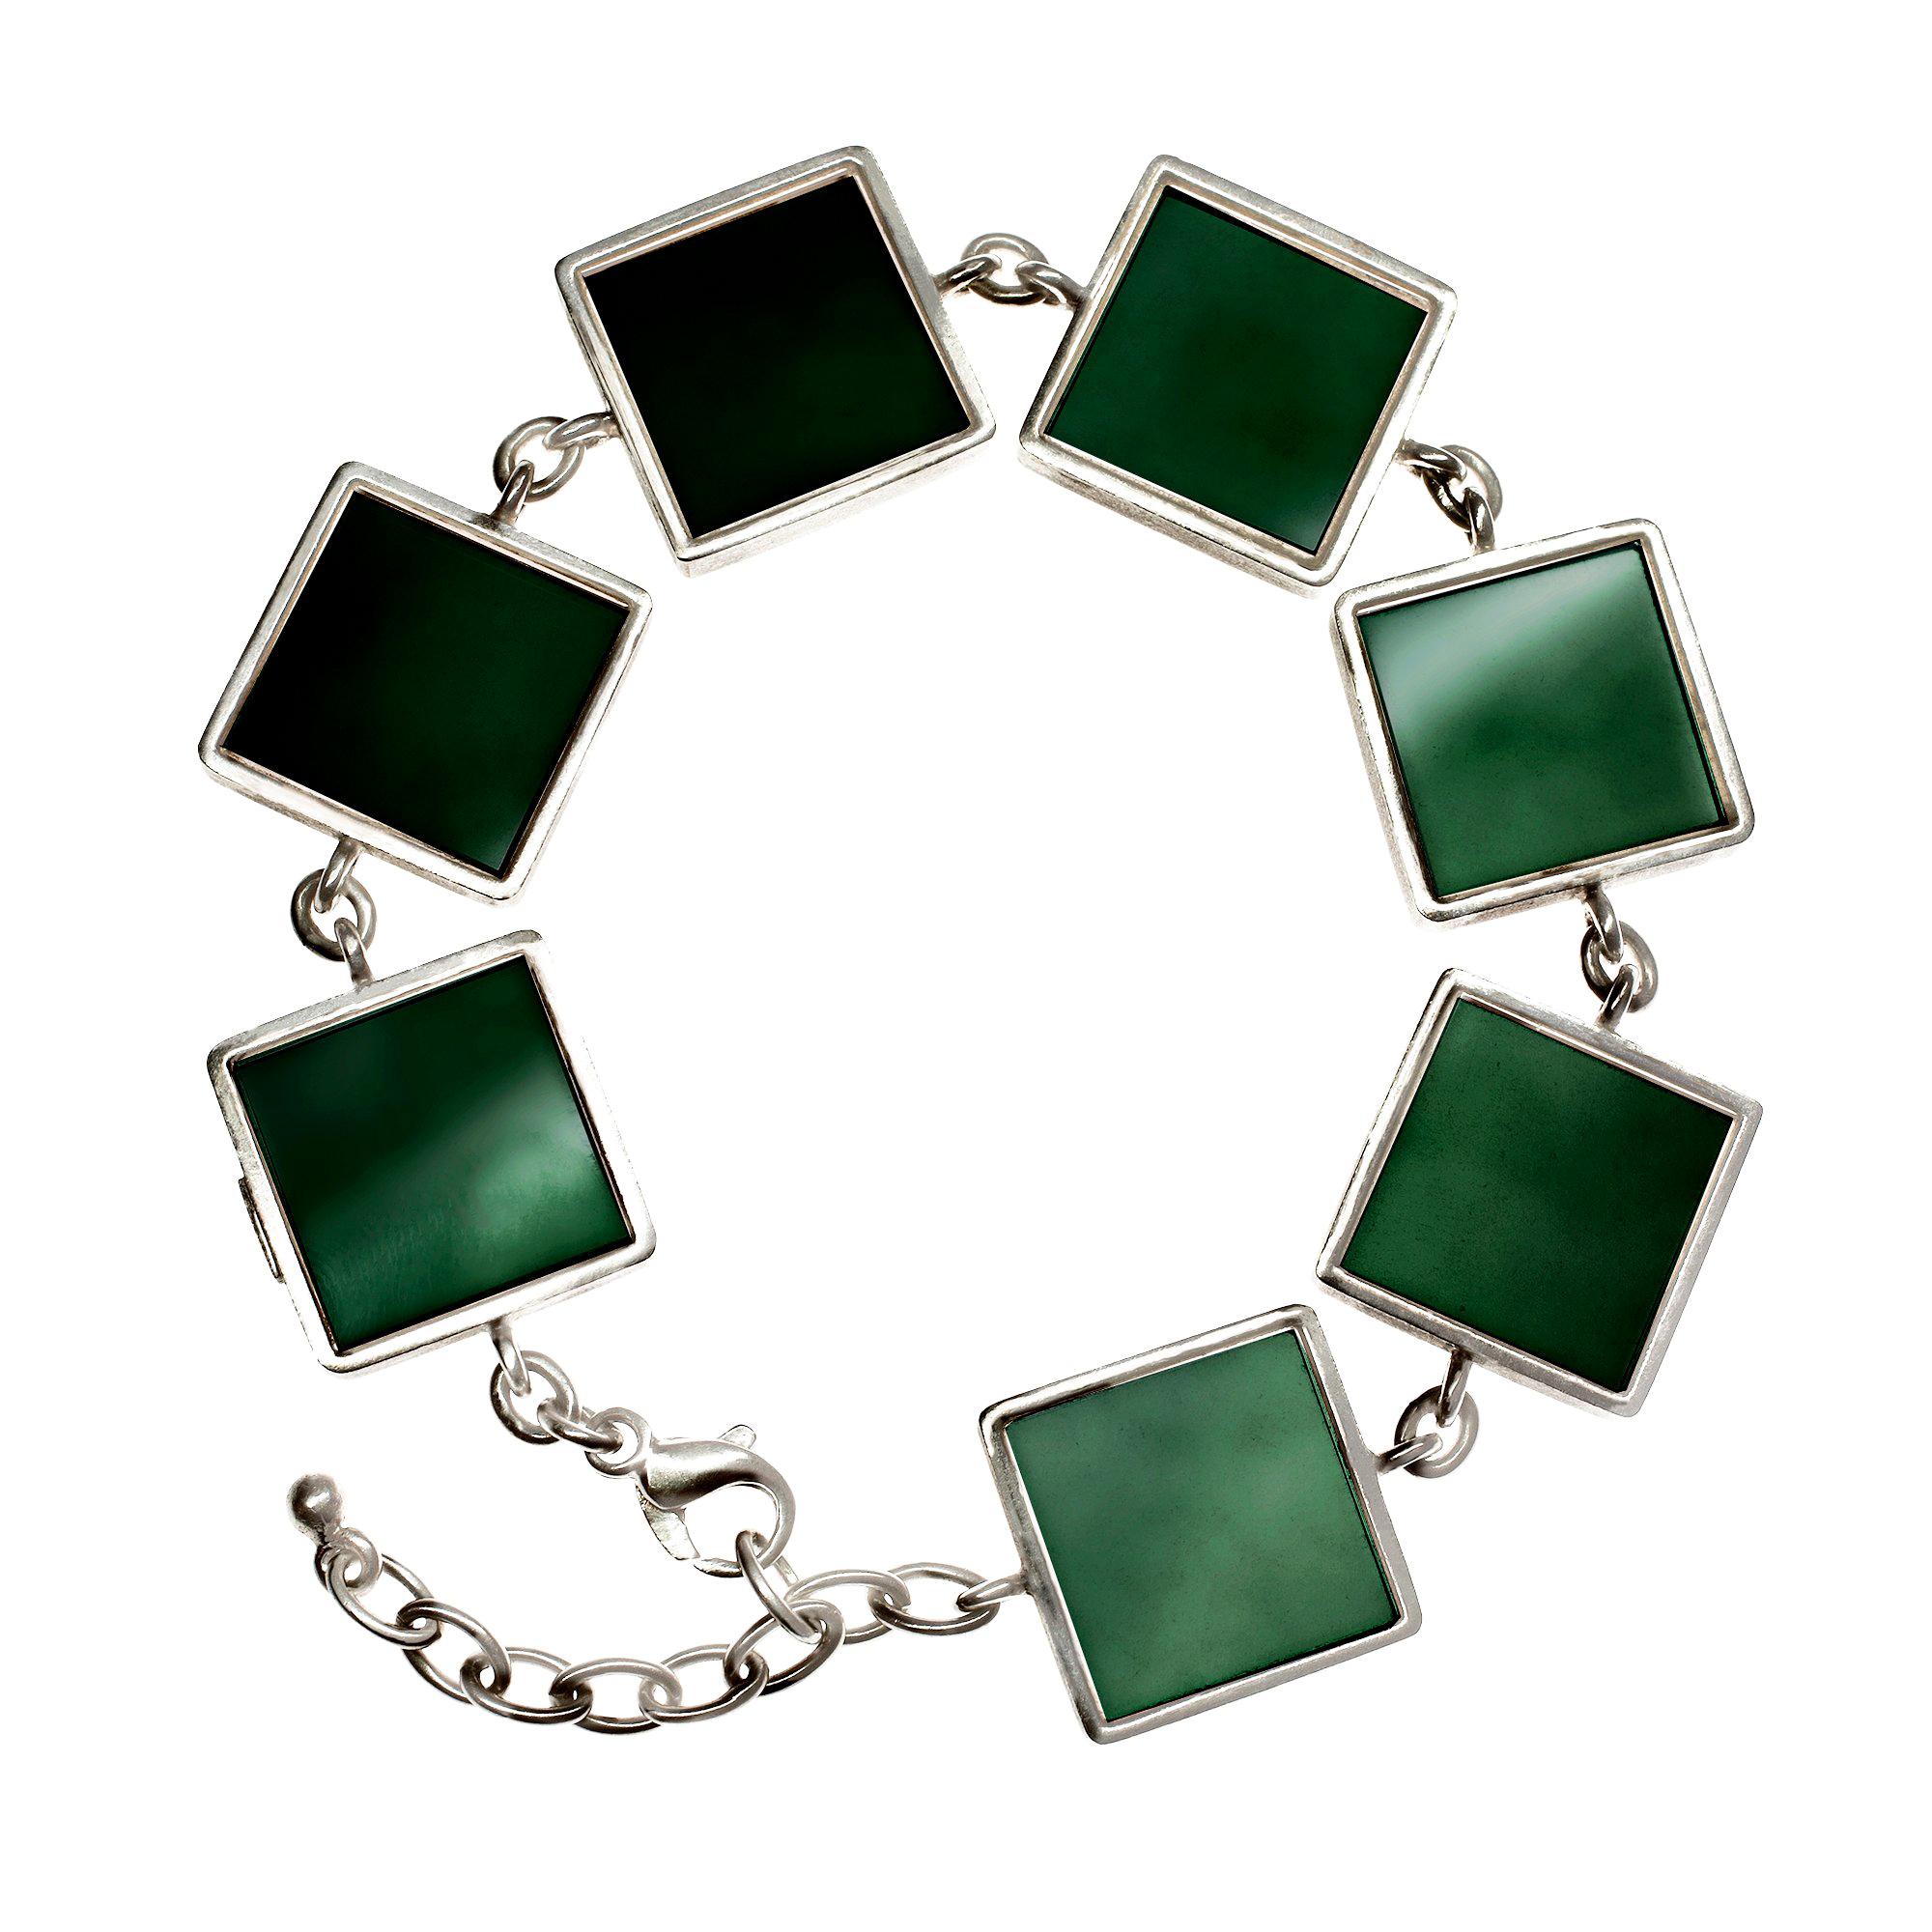 Ce bracelet de style Art déco est en argent sterling et présente sept quartz cultivés de couleur vert foncé et vif, chacun mesurant 15x15x3 mm. Il a été présenté dans Harper's Bazaar UA et Vogue UA.

Le bracelet est un bijou qui attire l'attention